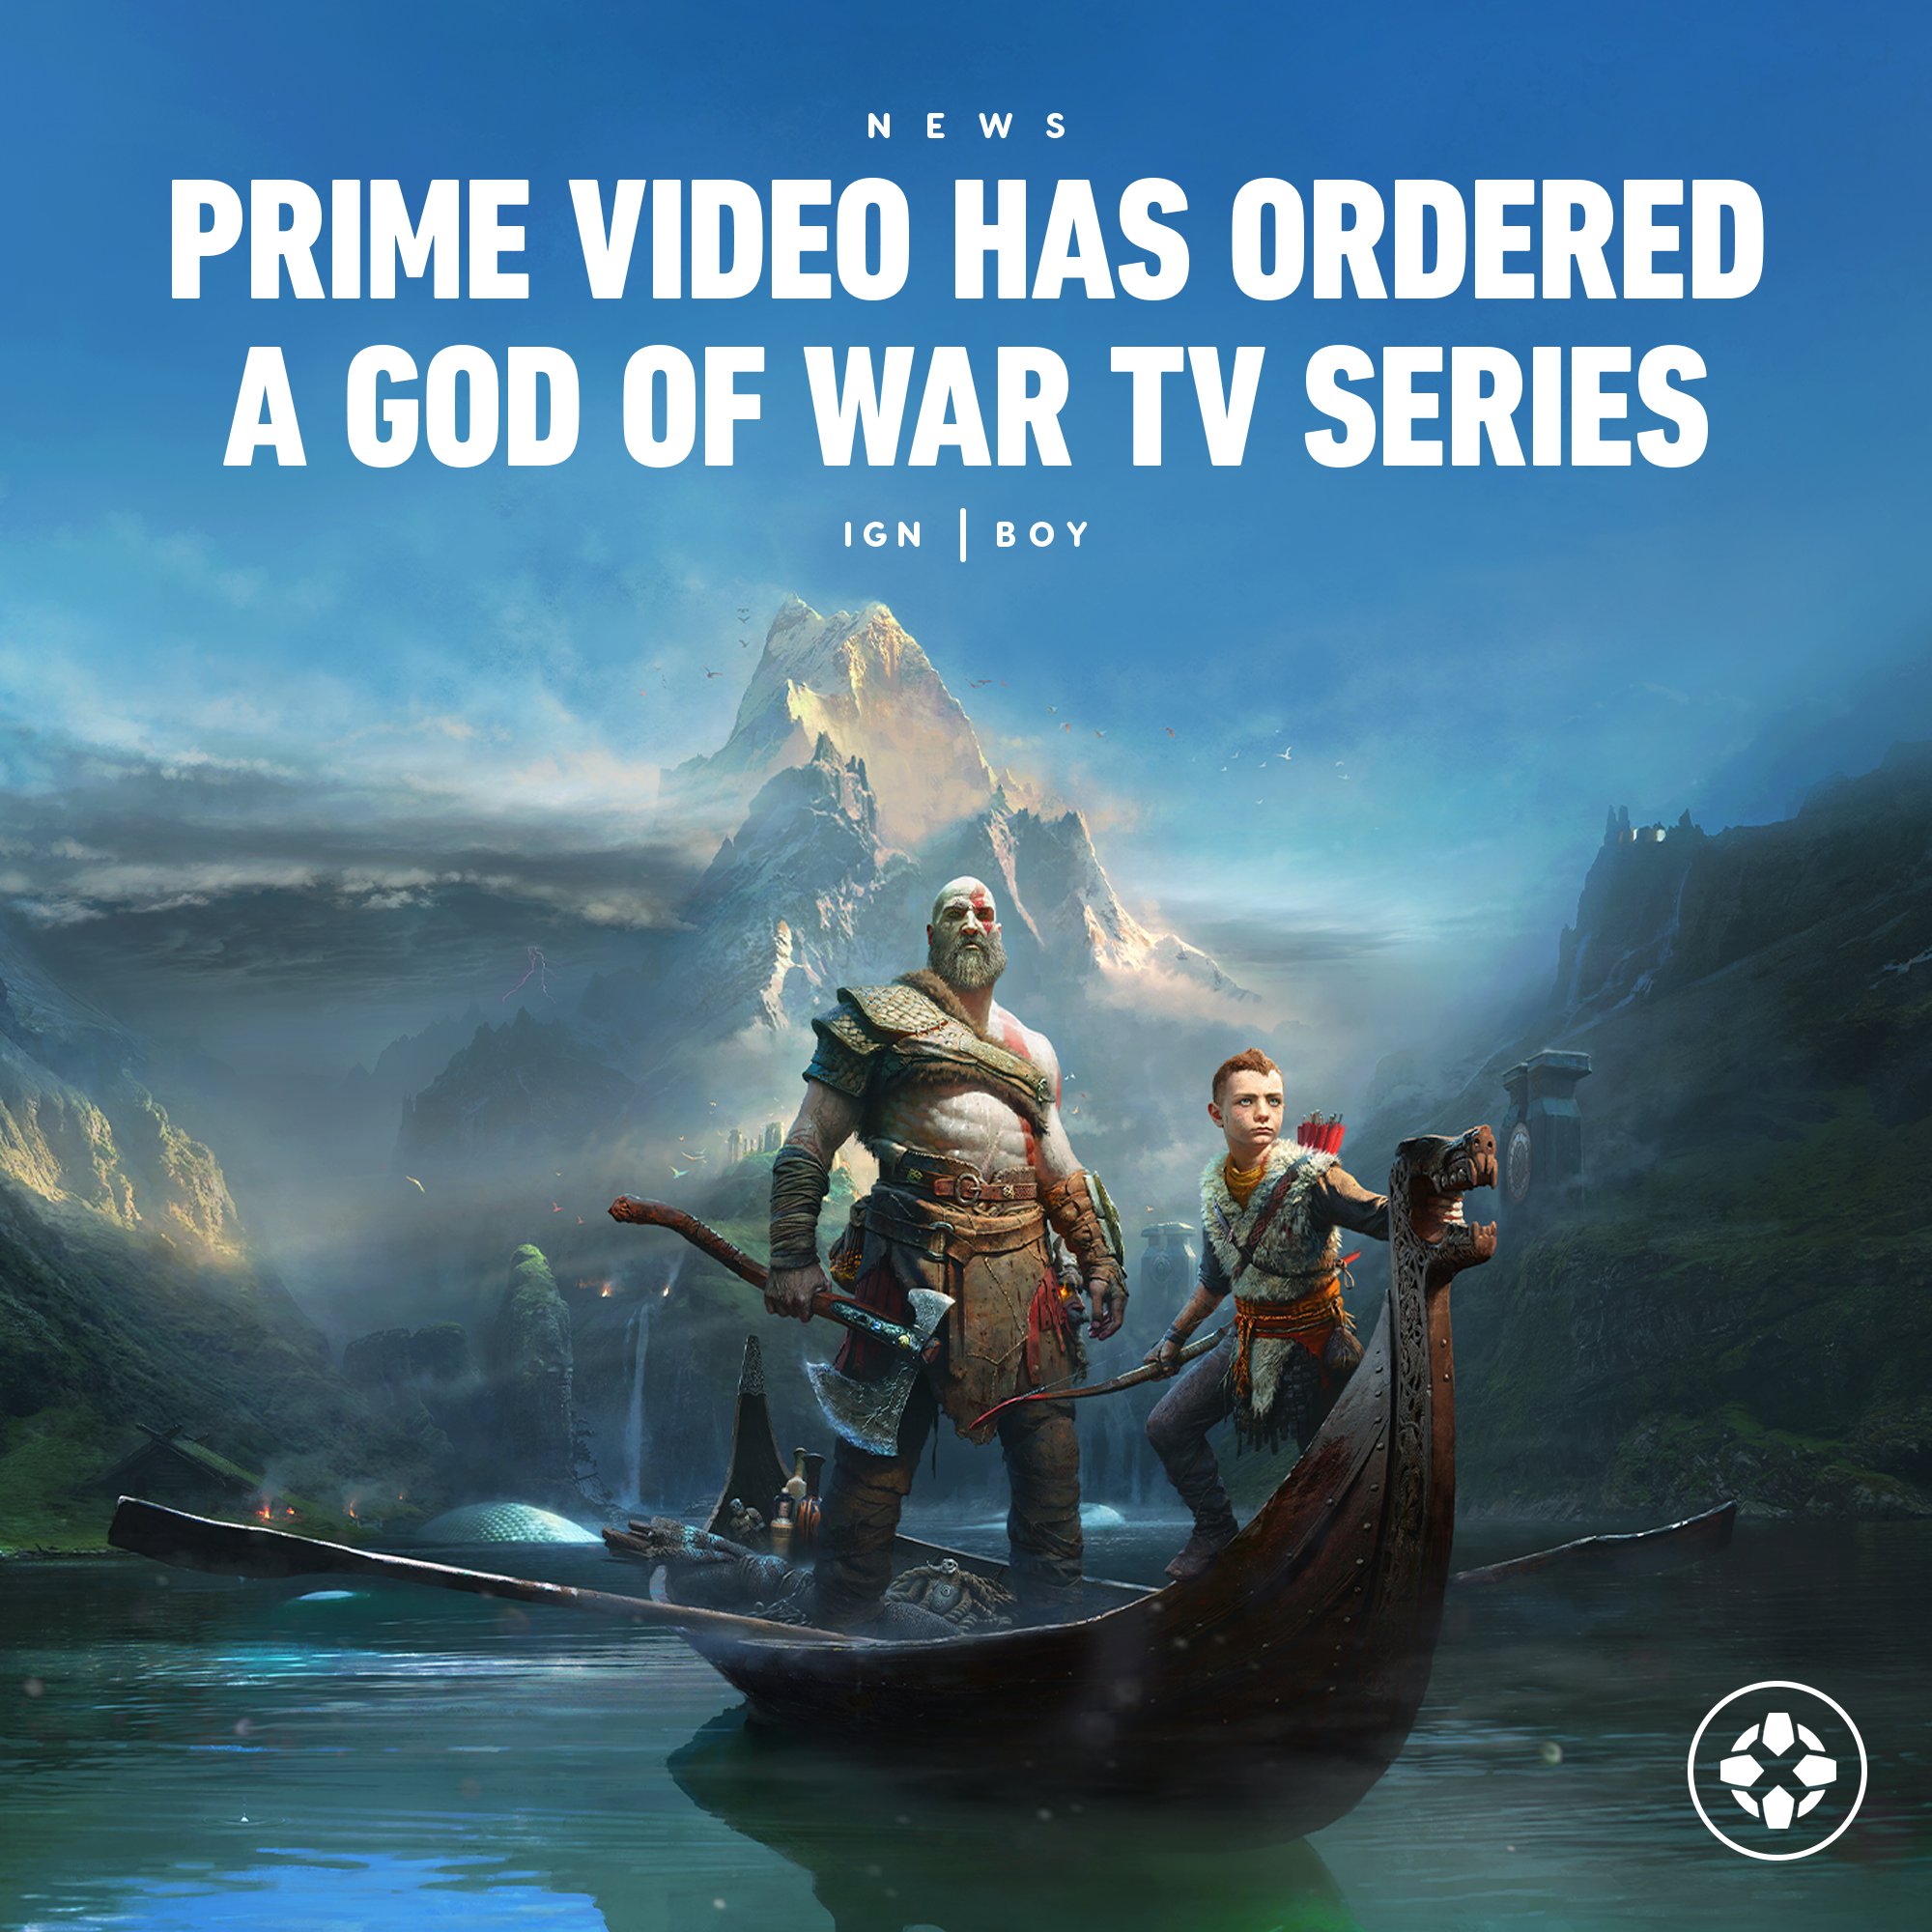 God of War show on Prime Video gets huge update